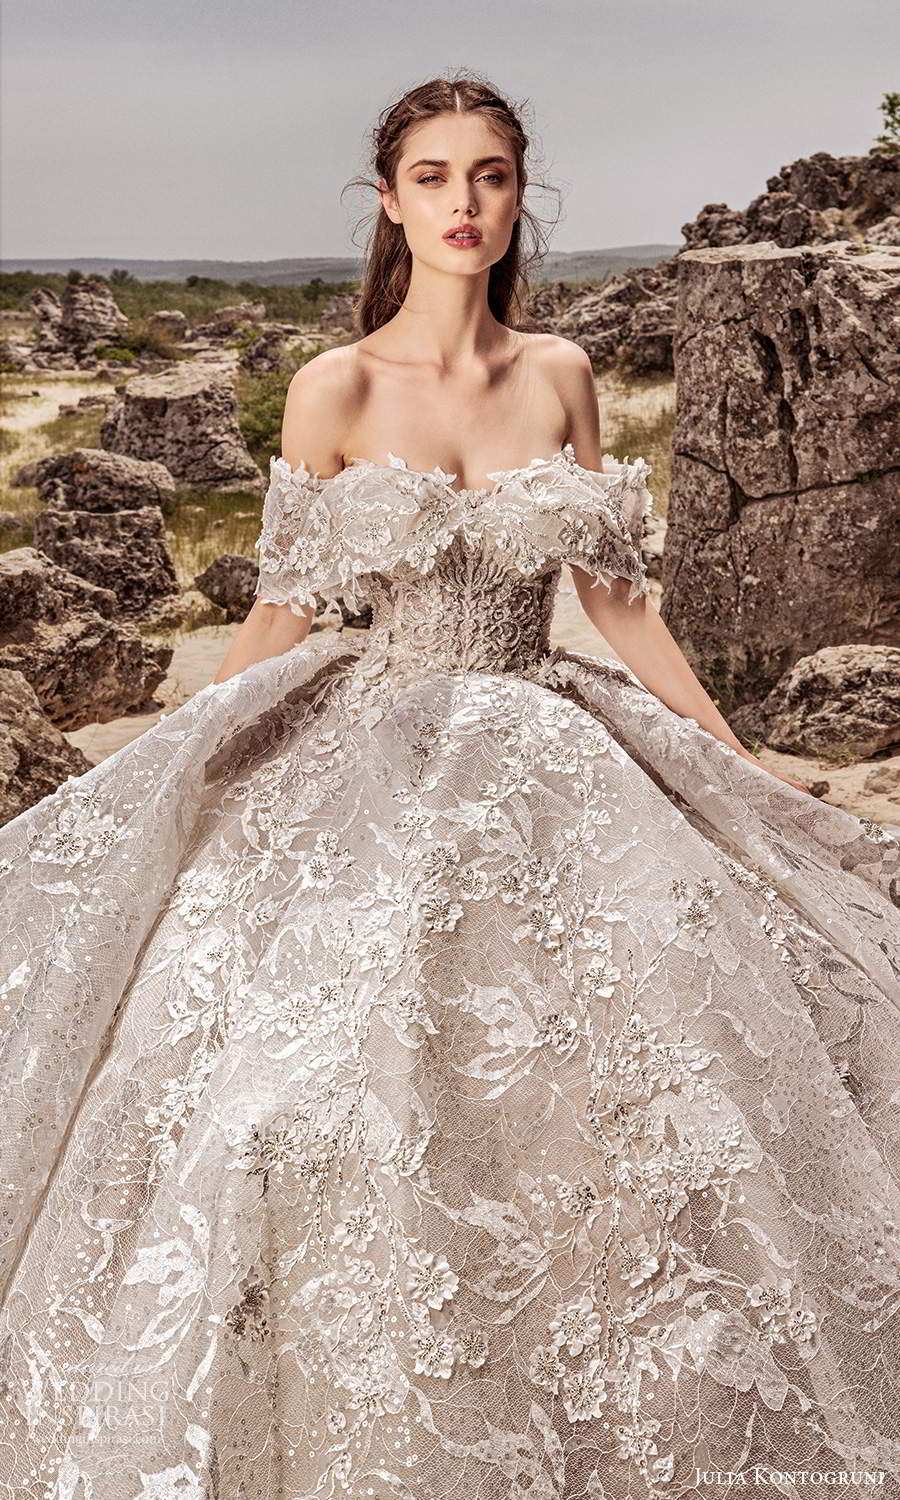 julia kontogruni 2021 bridal off shoulder straps sweetheart neckline fully embellished ball gown wedding dress cathedral train (6) zv